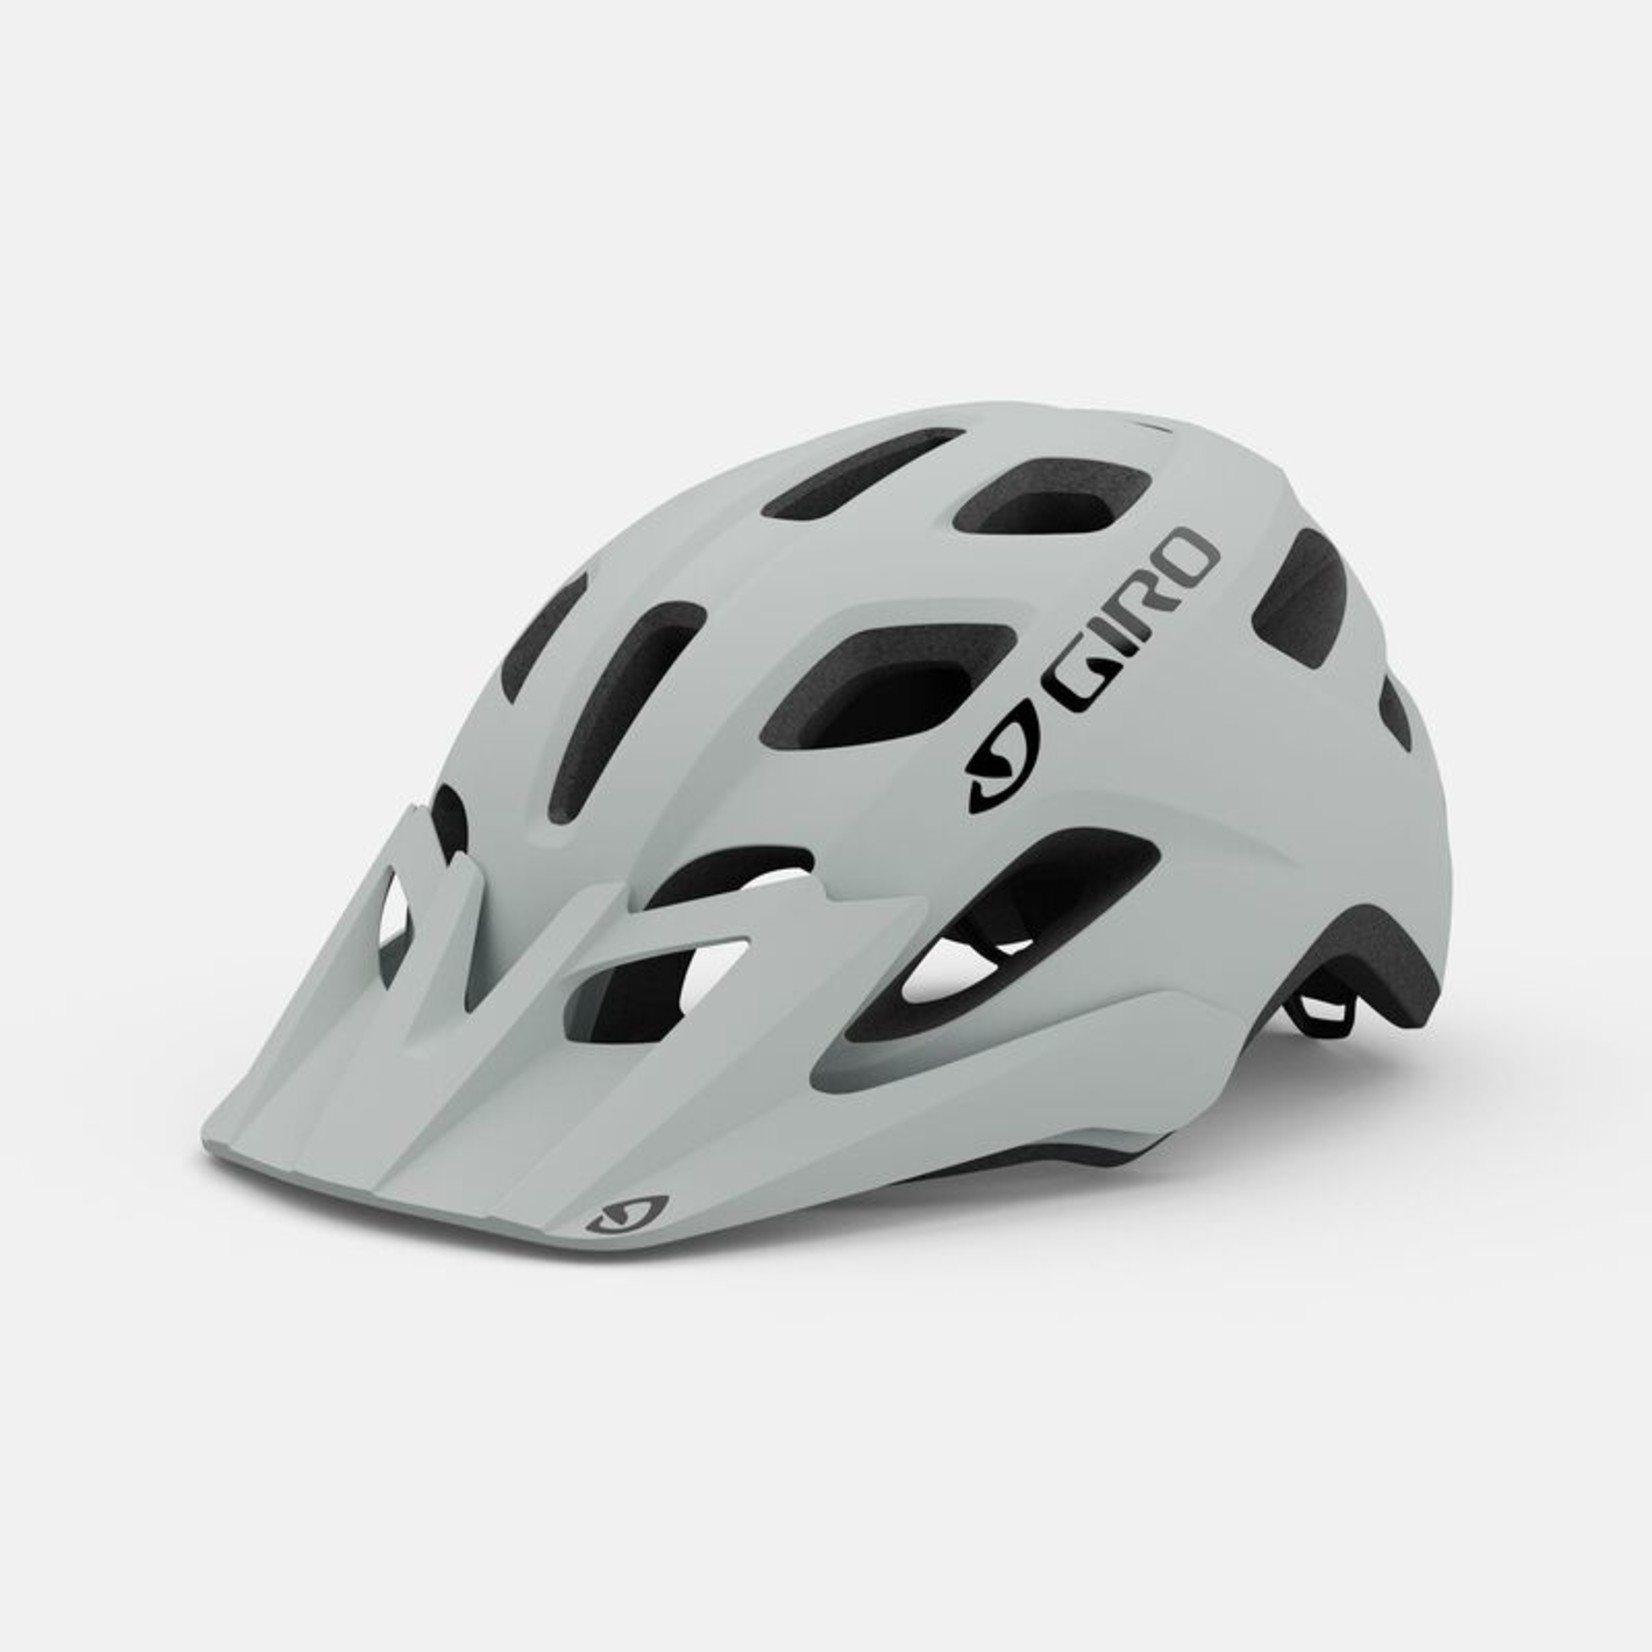 2021 Giro Fixture MIPS Helmet